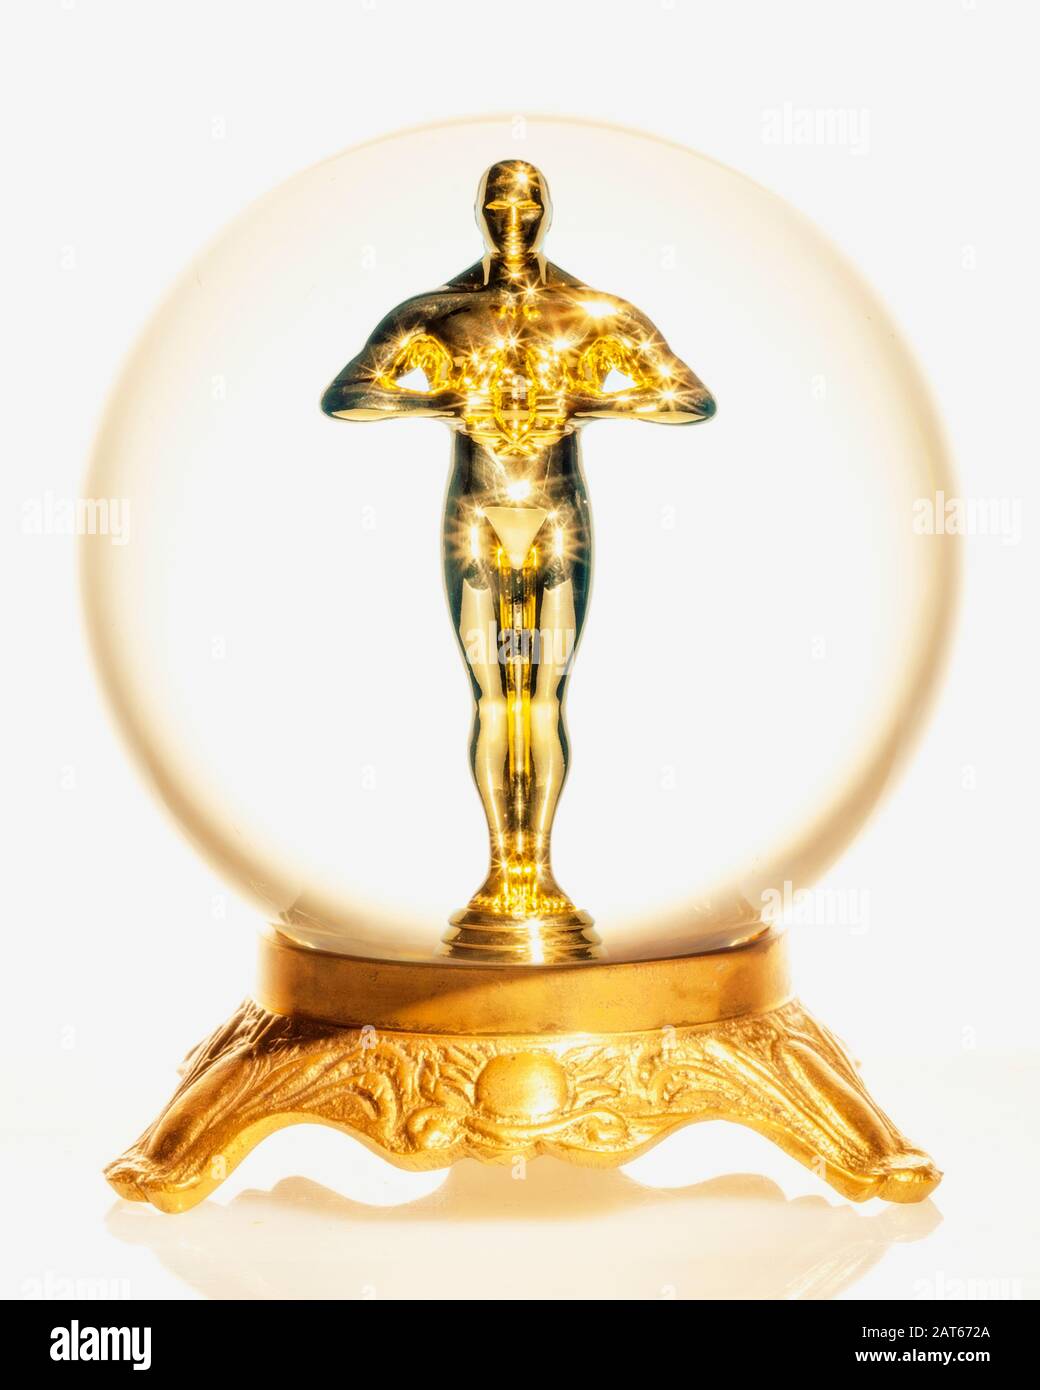 Una estatua de oro de estilo Oscar de un hombre parado dentro de una bola de cristal Foto de stock